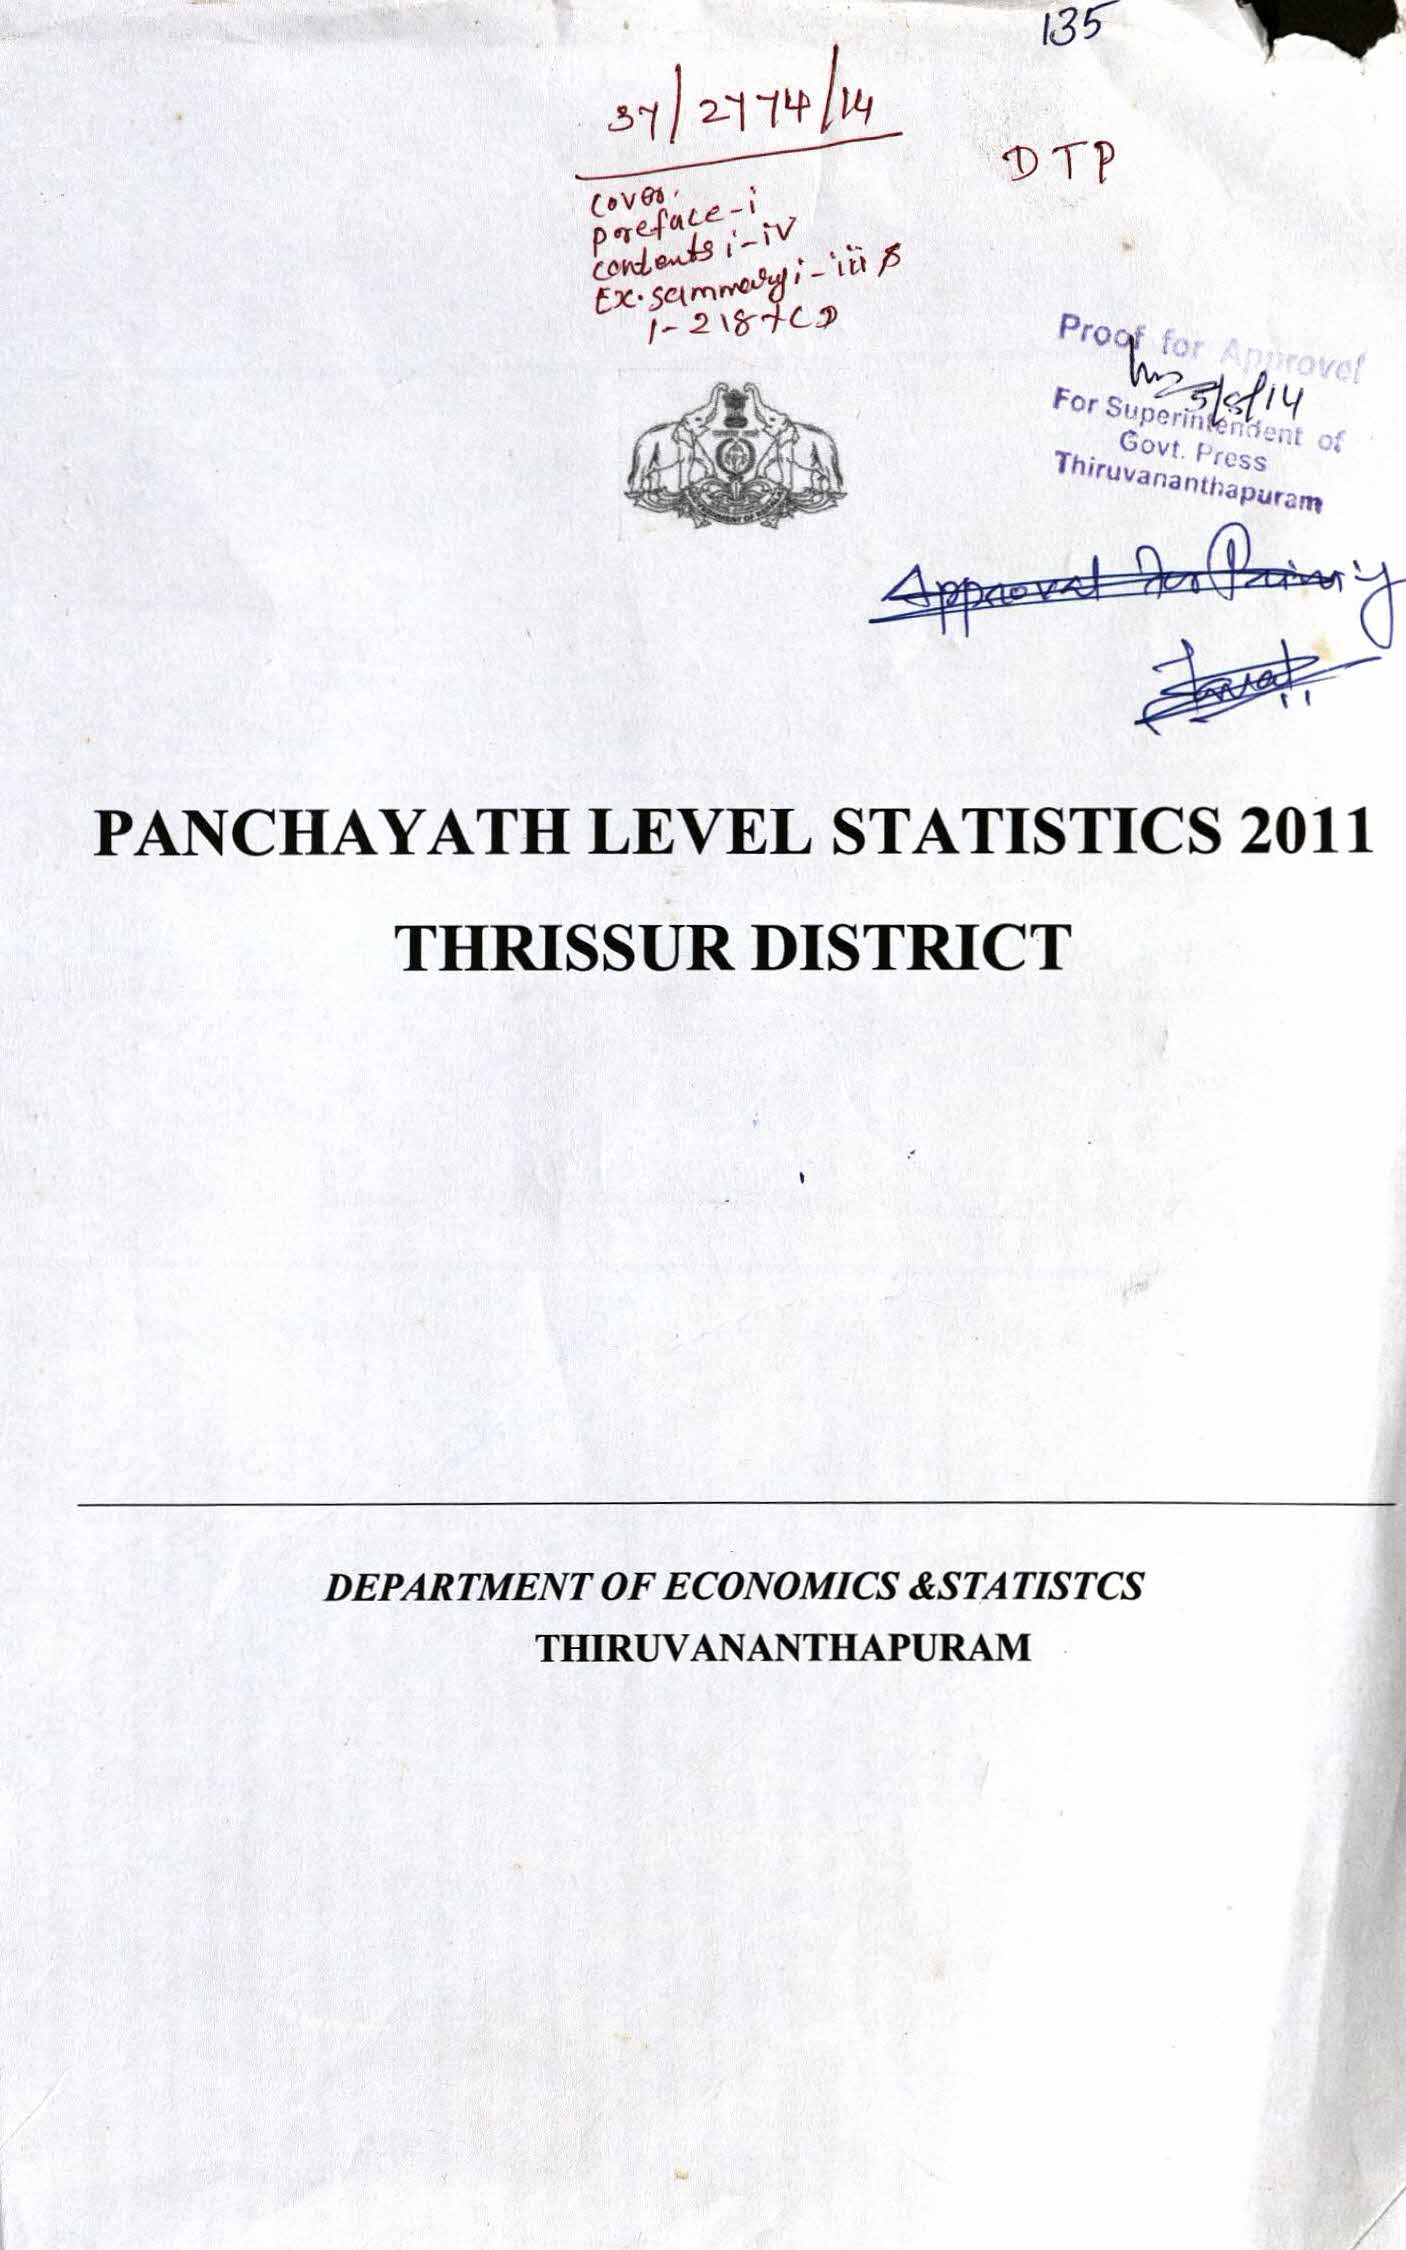 Panchayath Level Statistics Thrissur District 2011